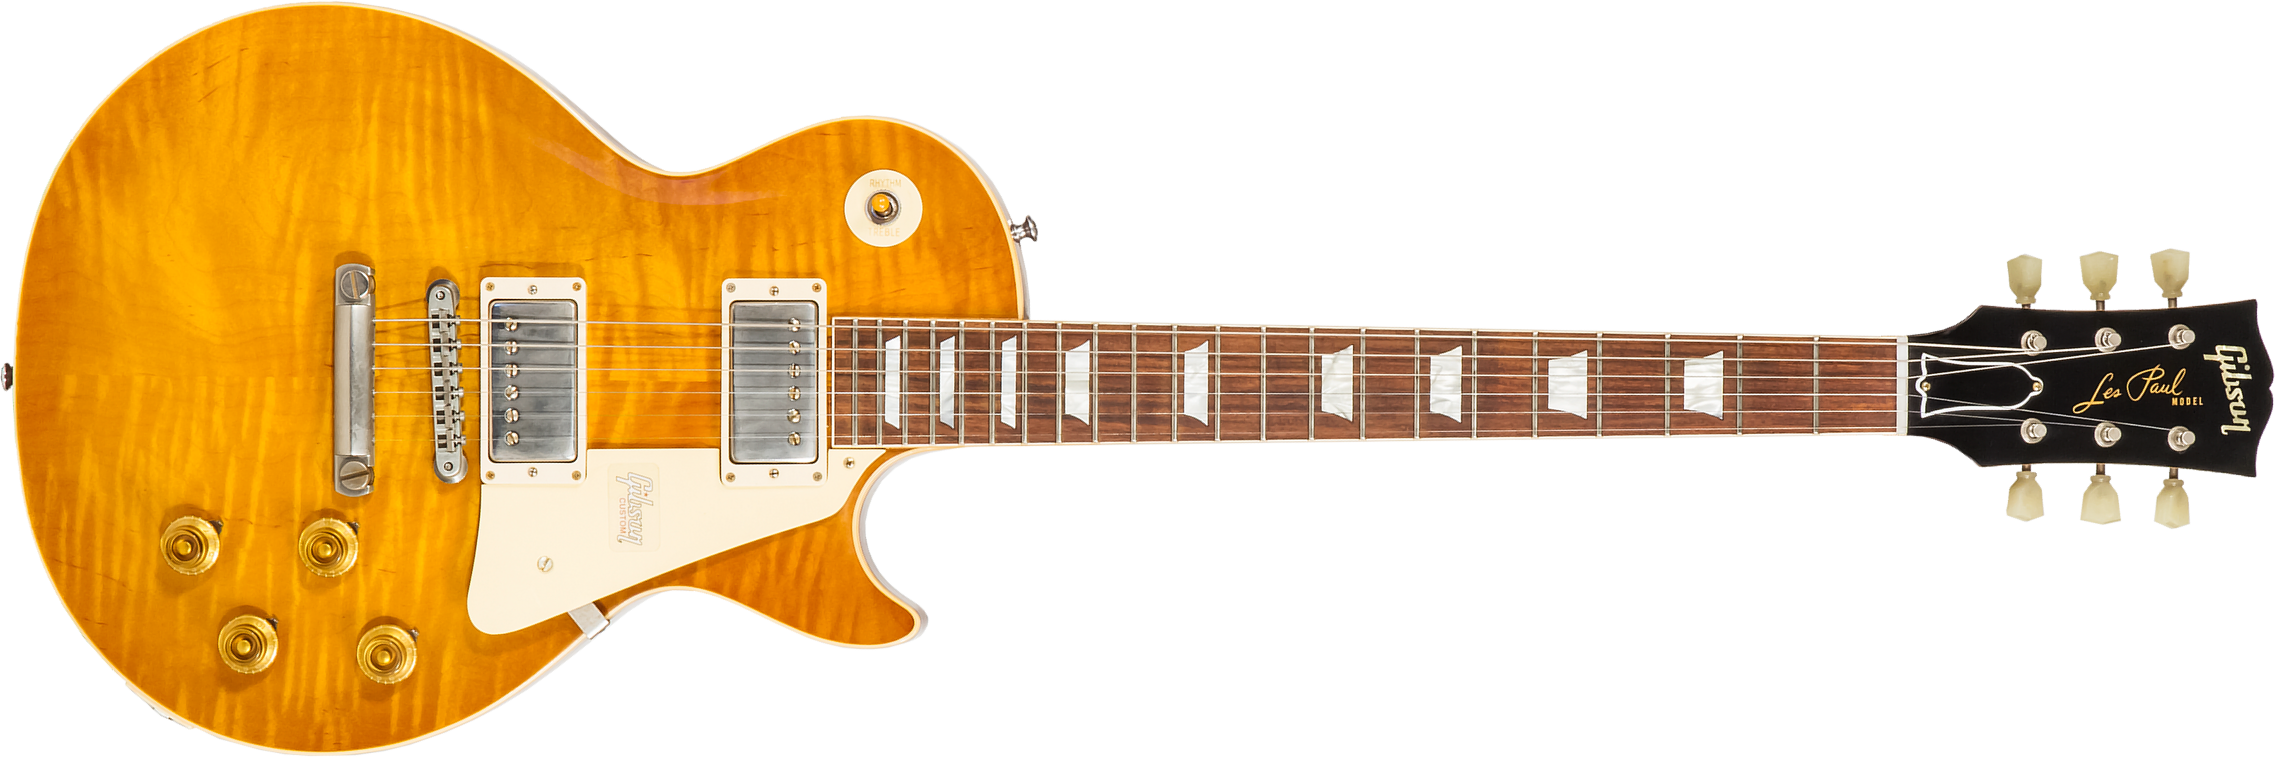 Gibson Custom Shop Les Paul Standard Burstdriver 2h Ht Rw #871130 - Vos Amber Ale - Guitarra eléctrica de corte único. - Main picture